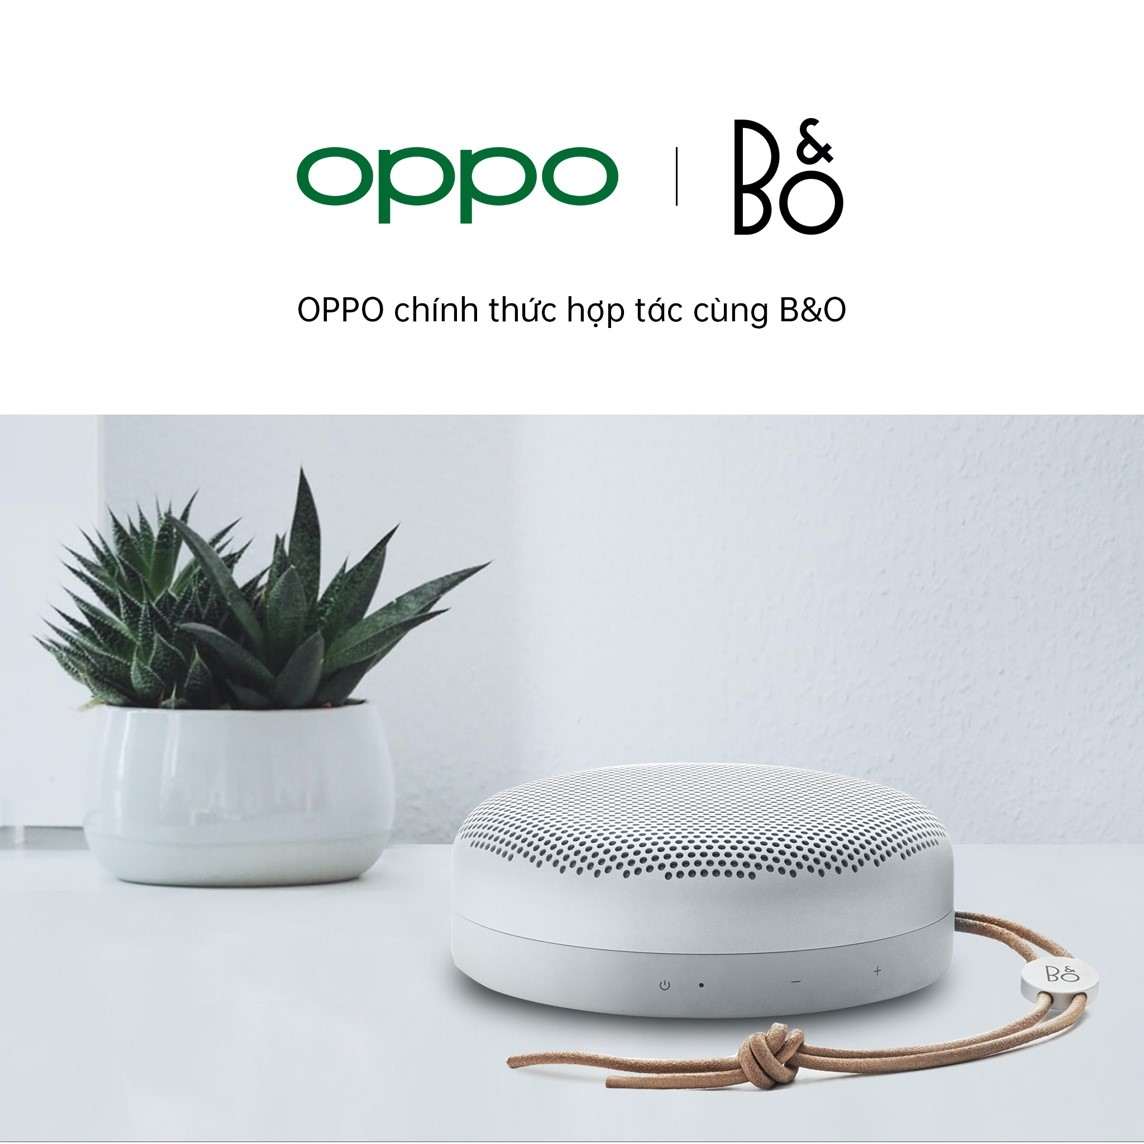 OPPO B&O